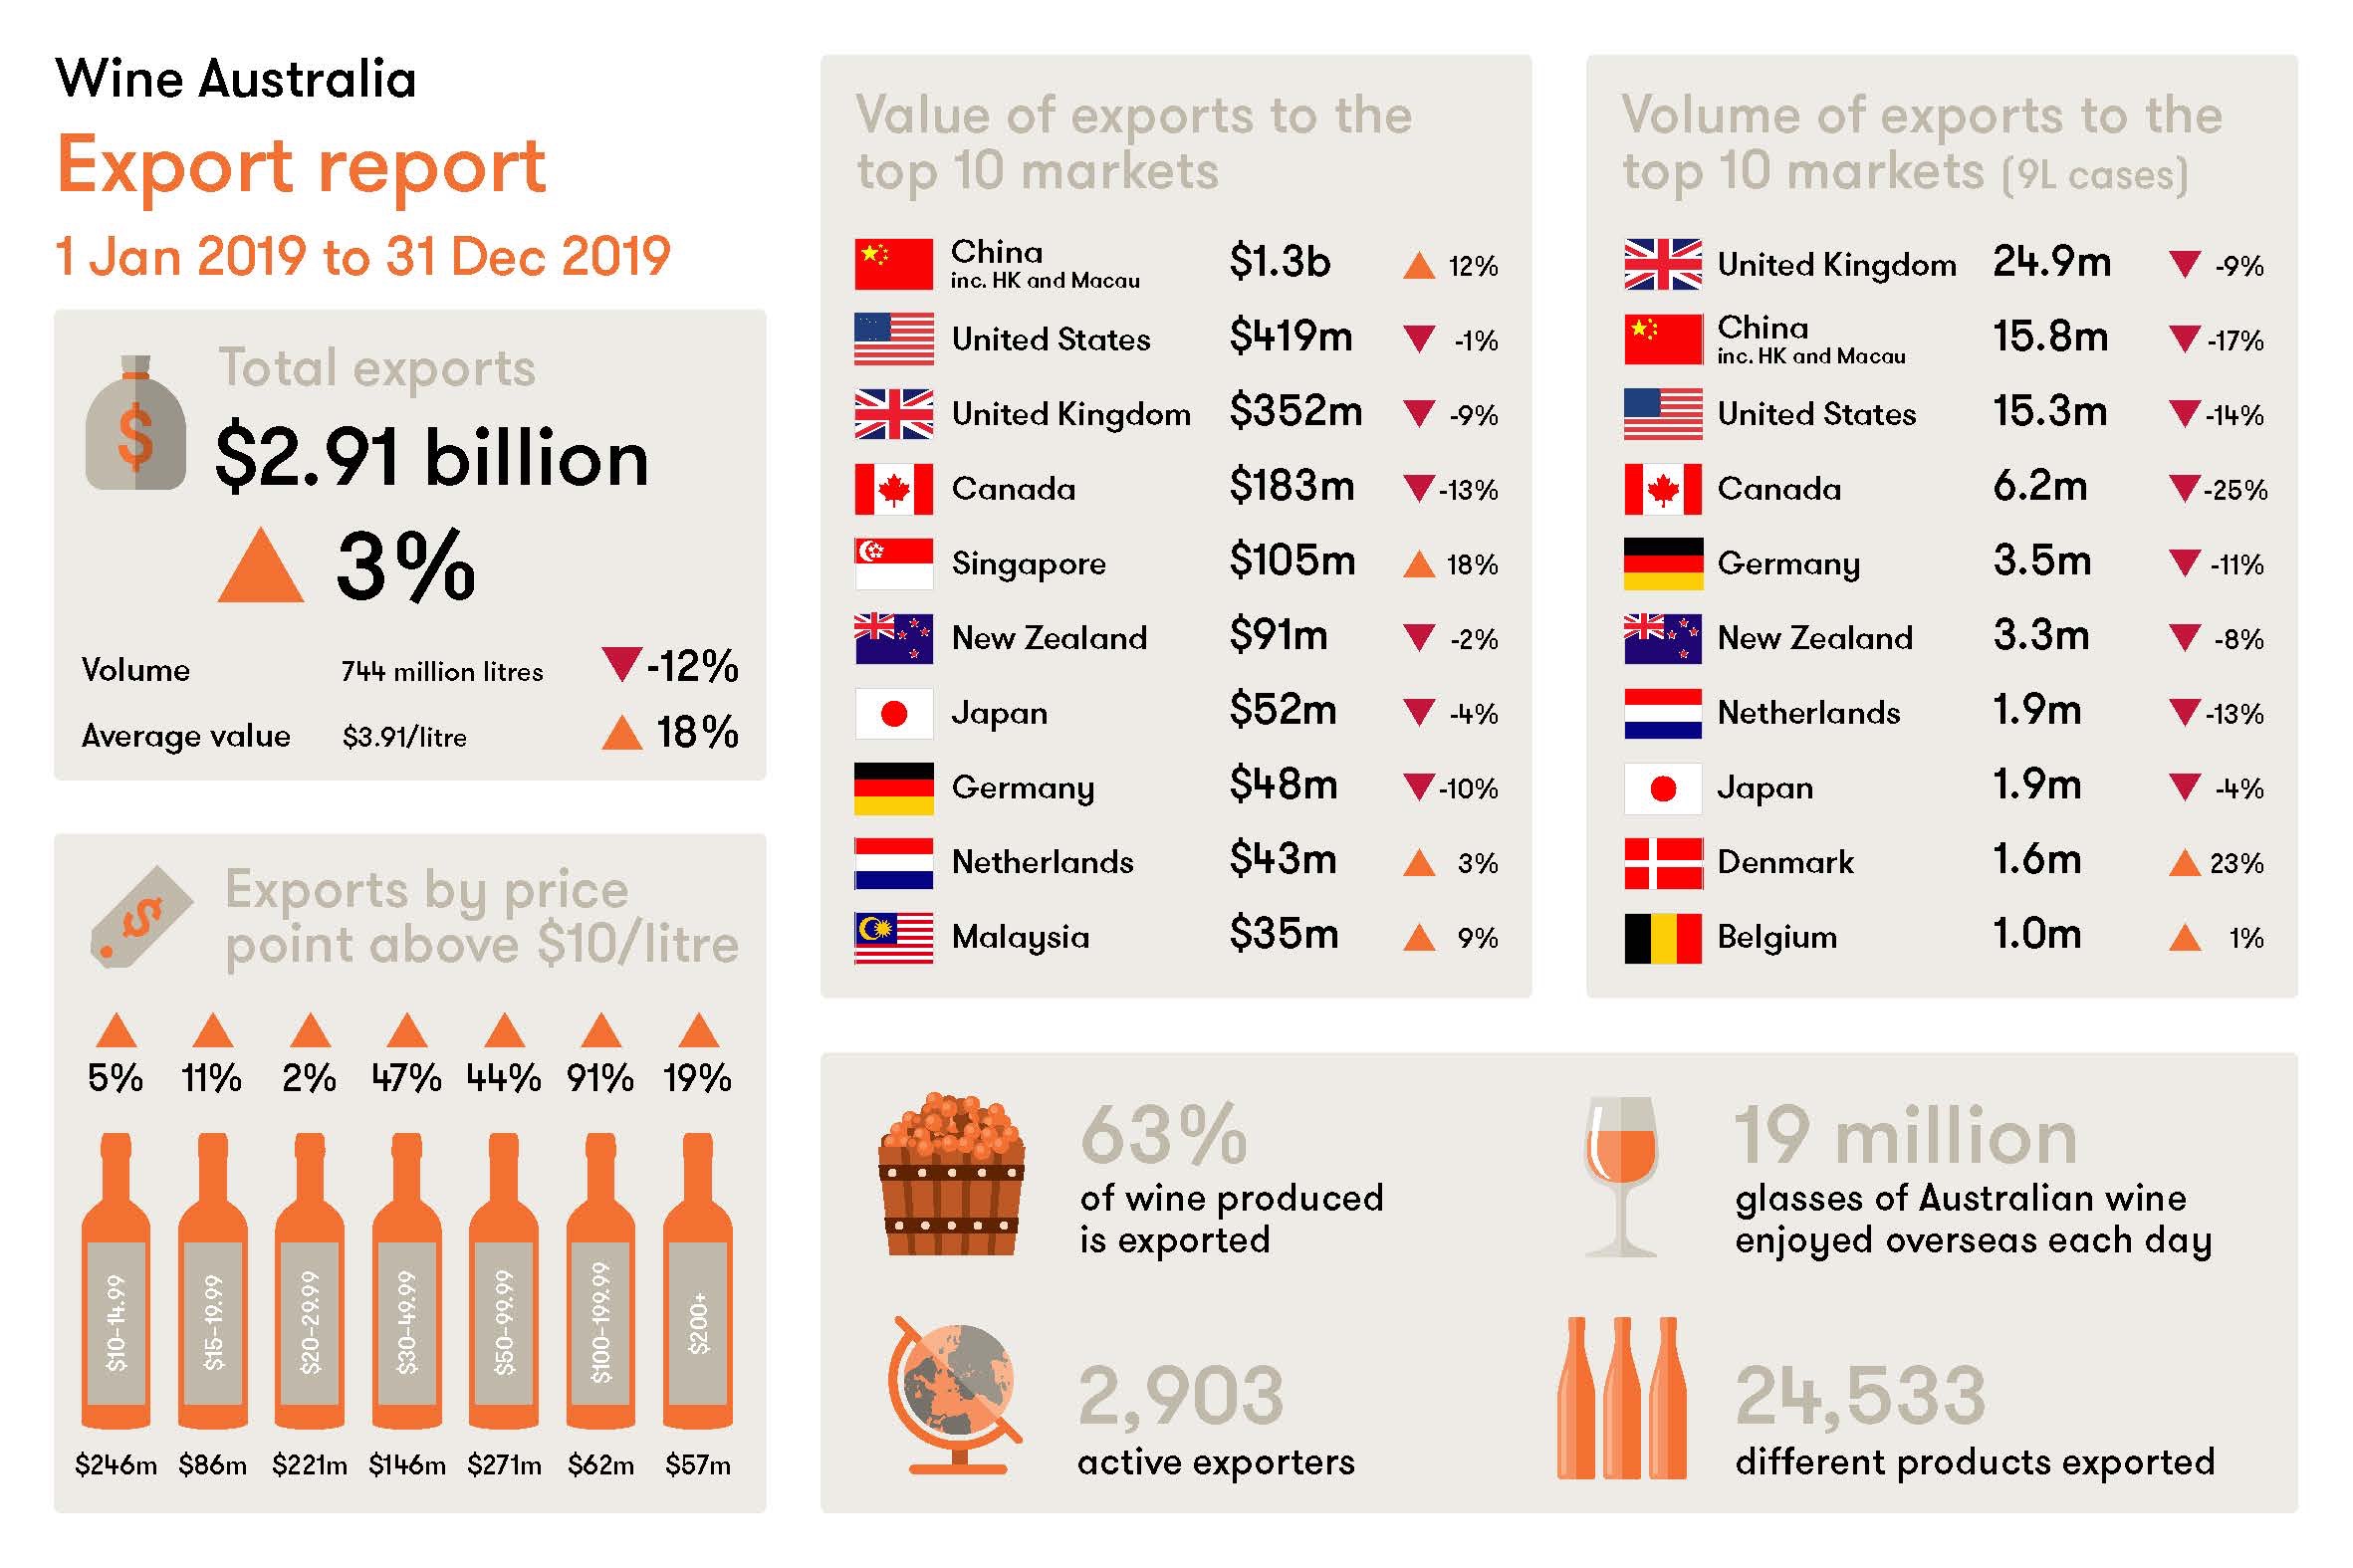 Wine Australia exports